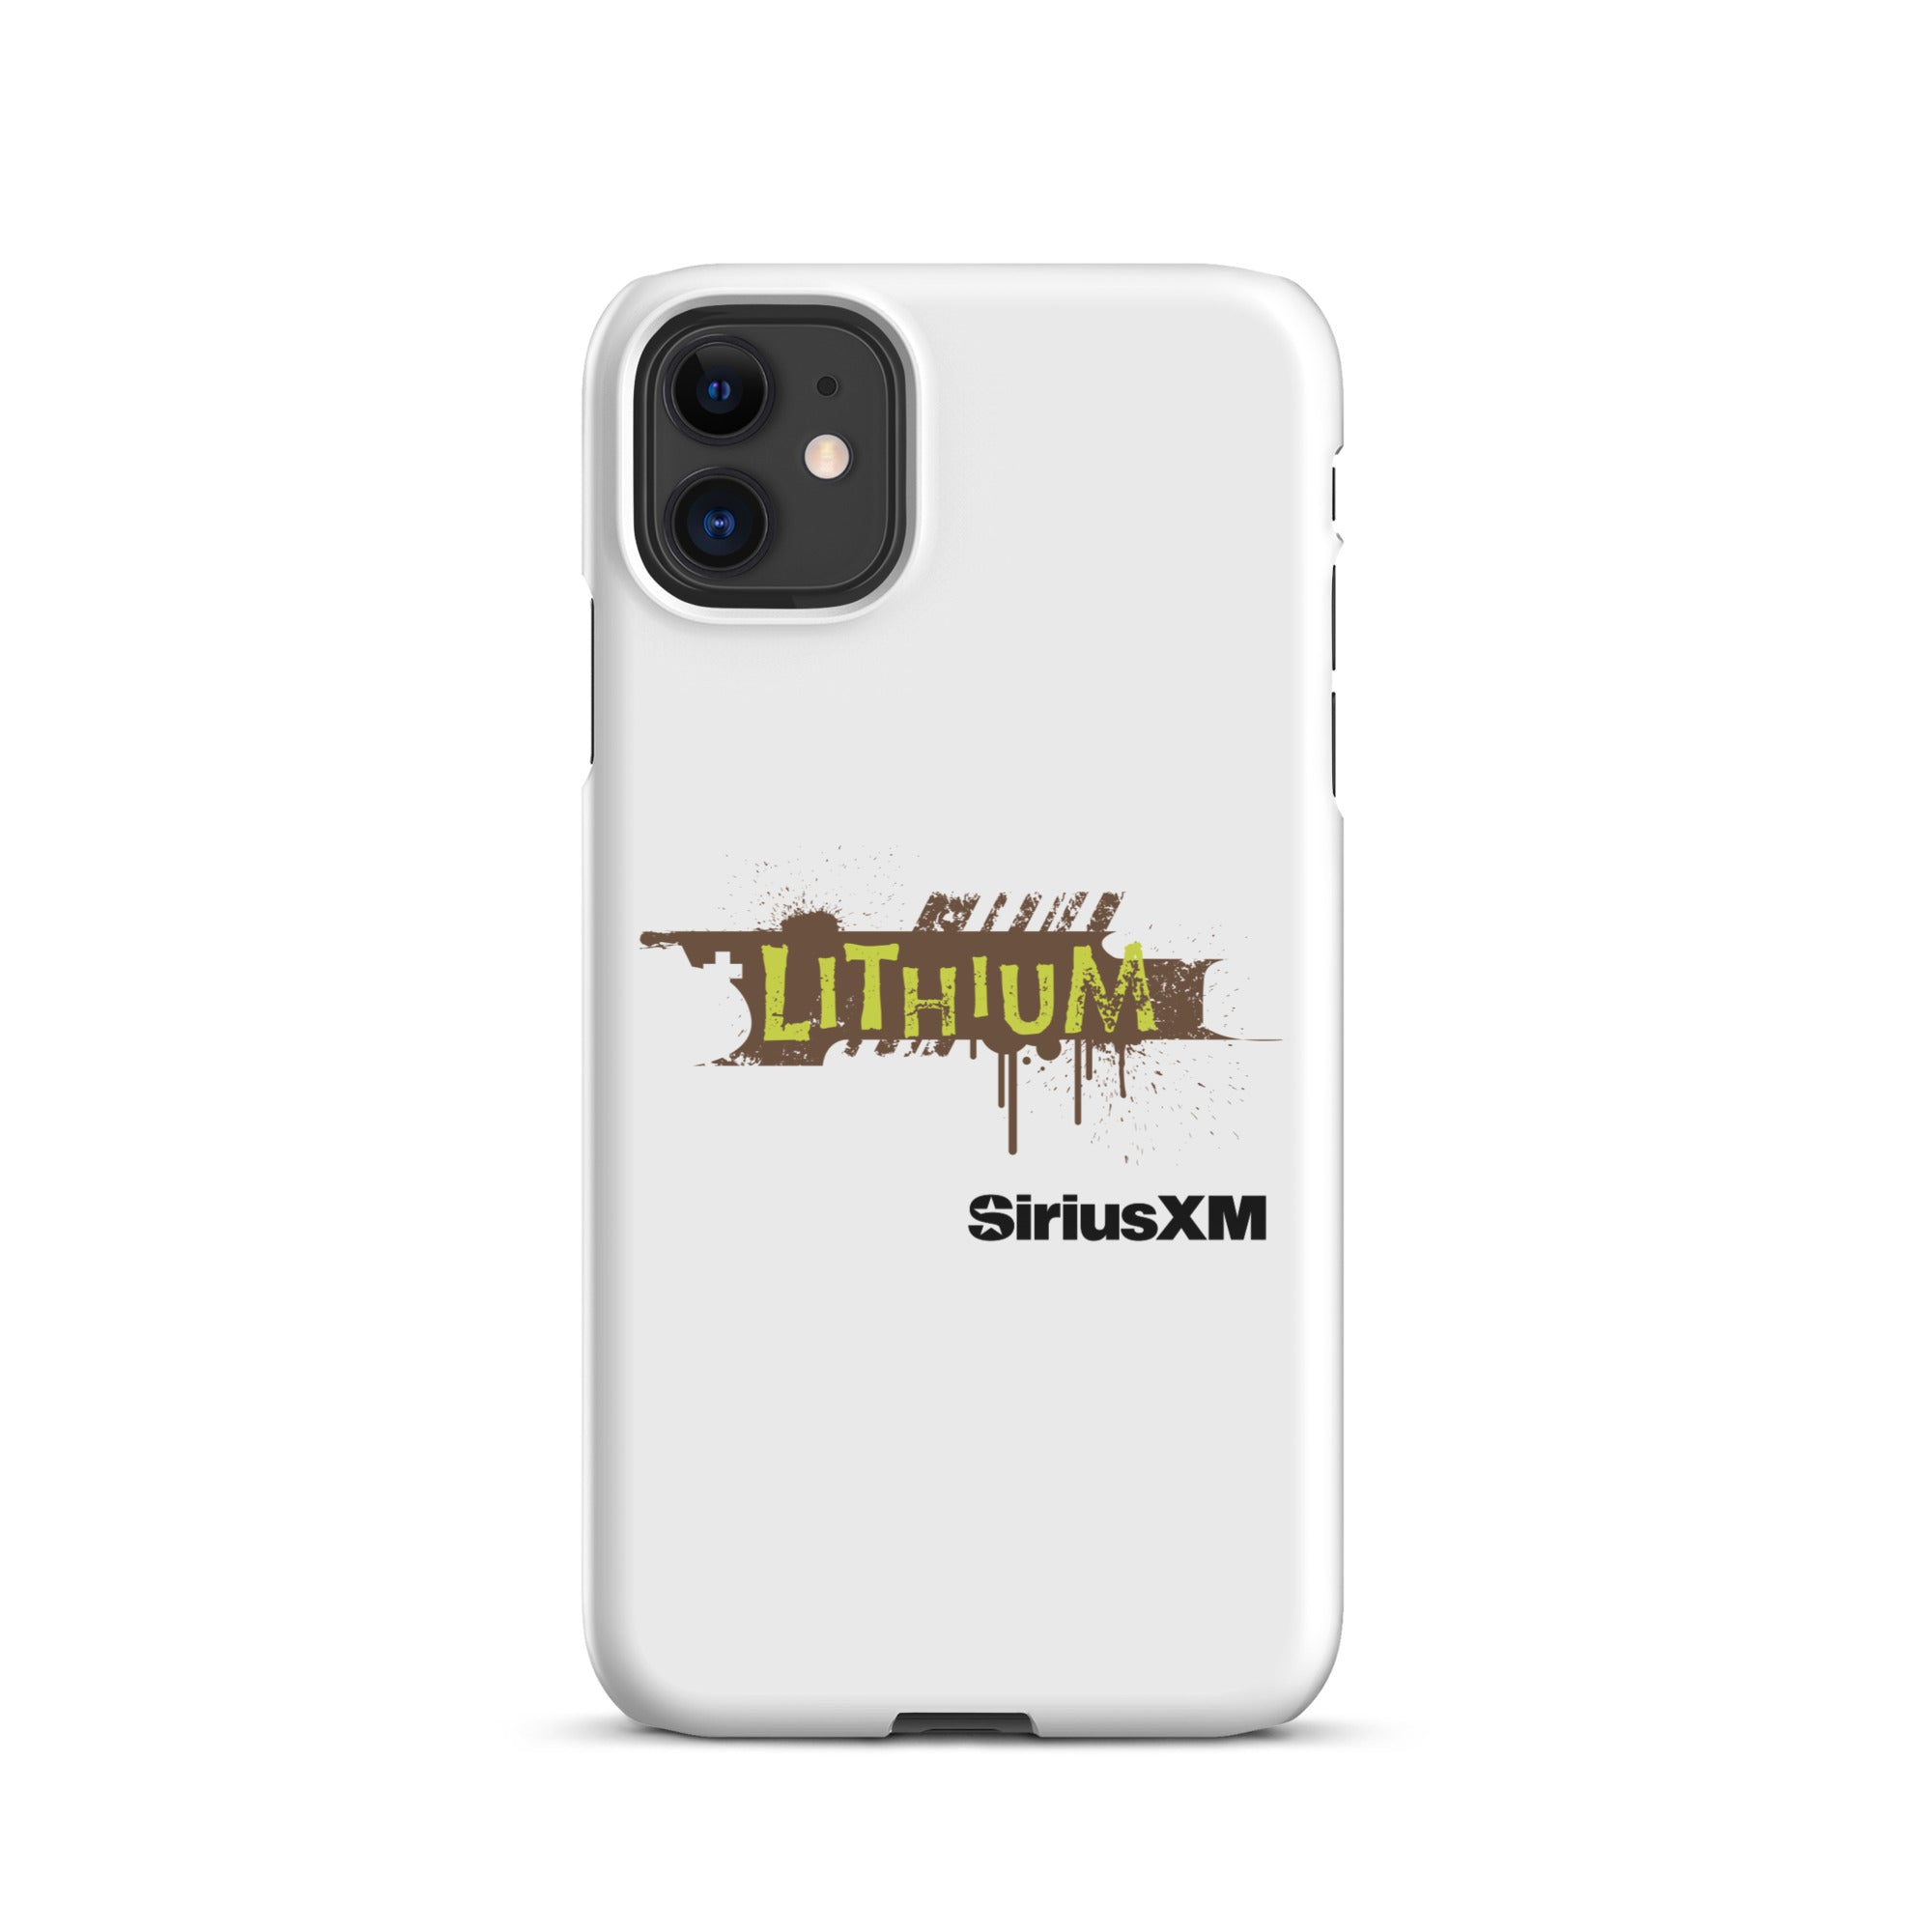 Lithium: iPhone® Snap Case